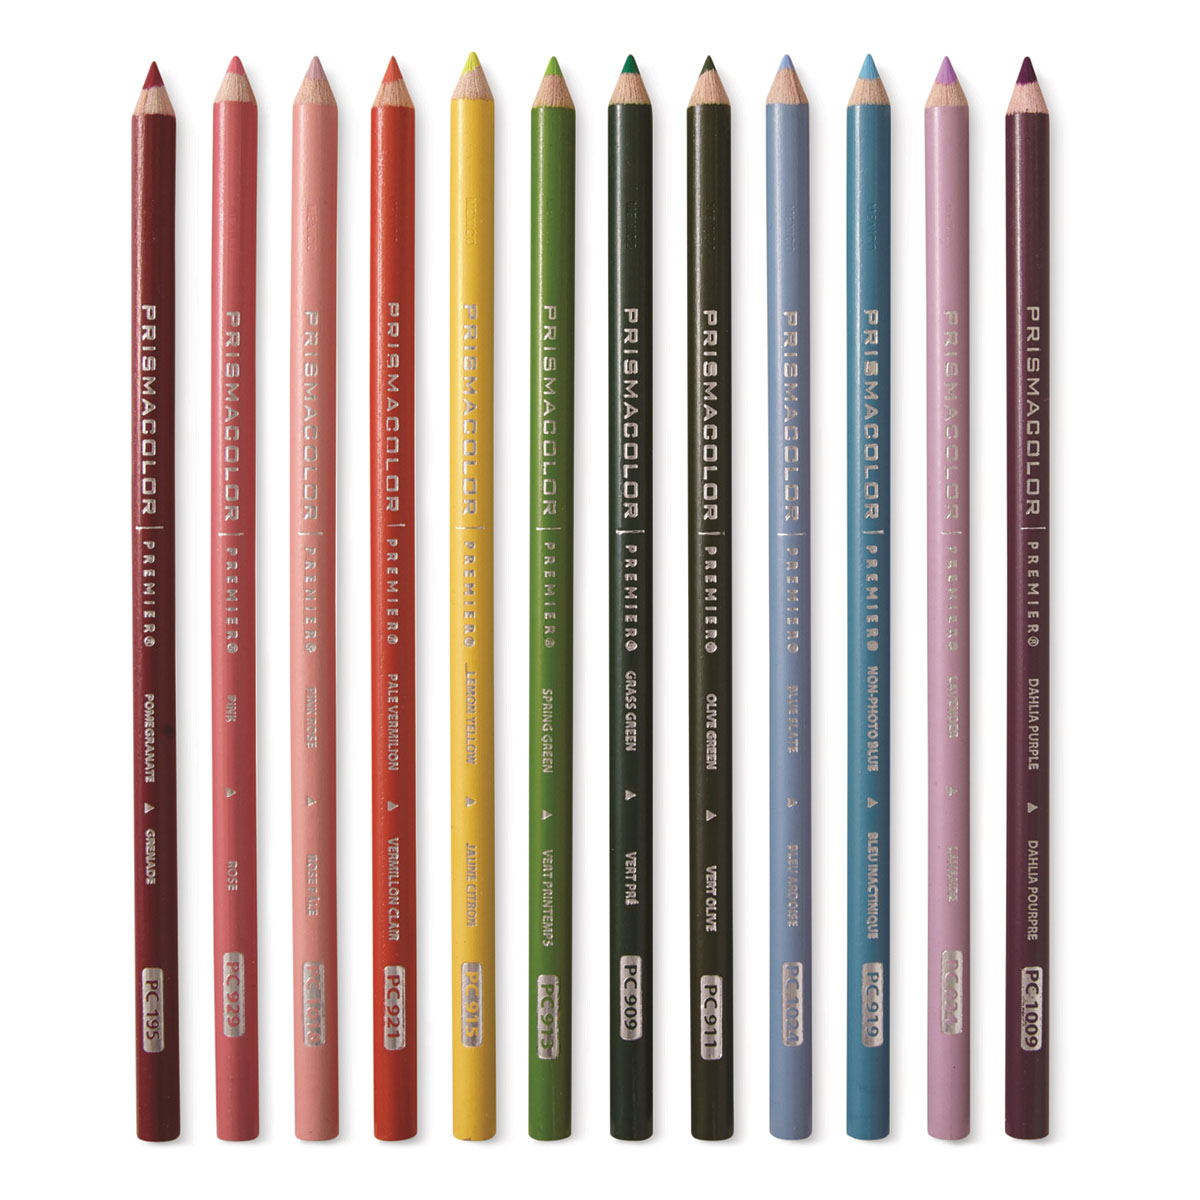 Prismacolor Premier Colored Pencil - Botanical Colors, Set of 12